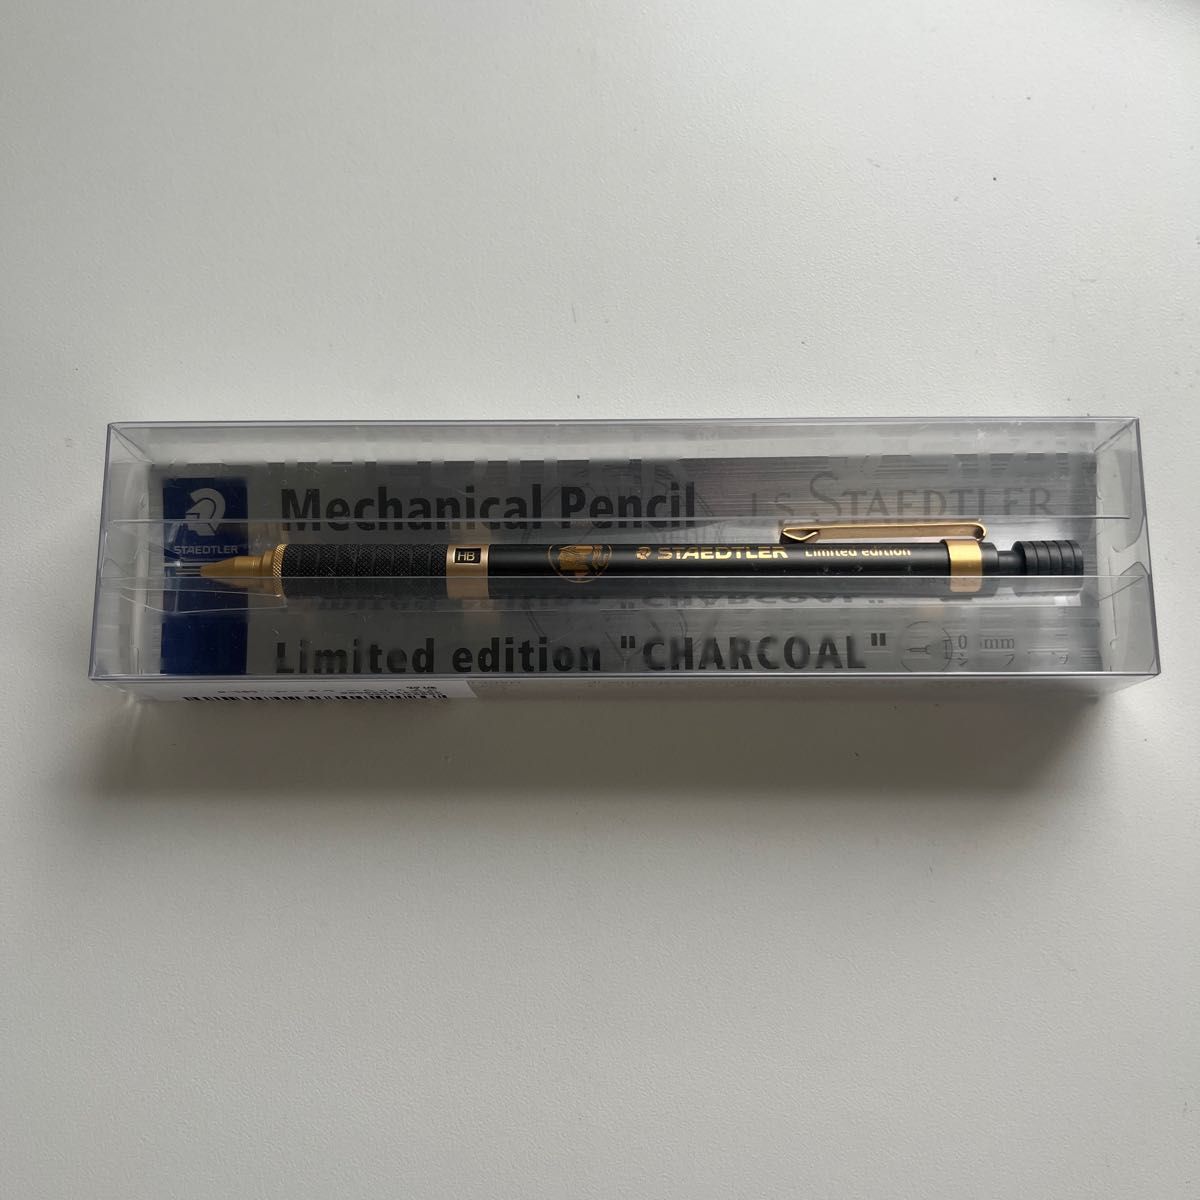 ステッドラー シャーペン 0.5mm 製図用 シャープペン 限定 チャコール 925 3505-8